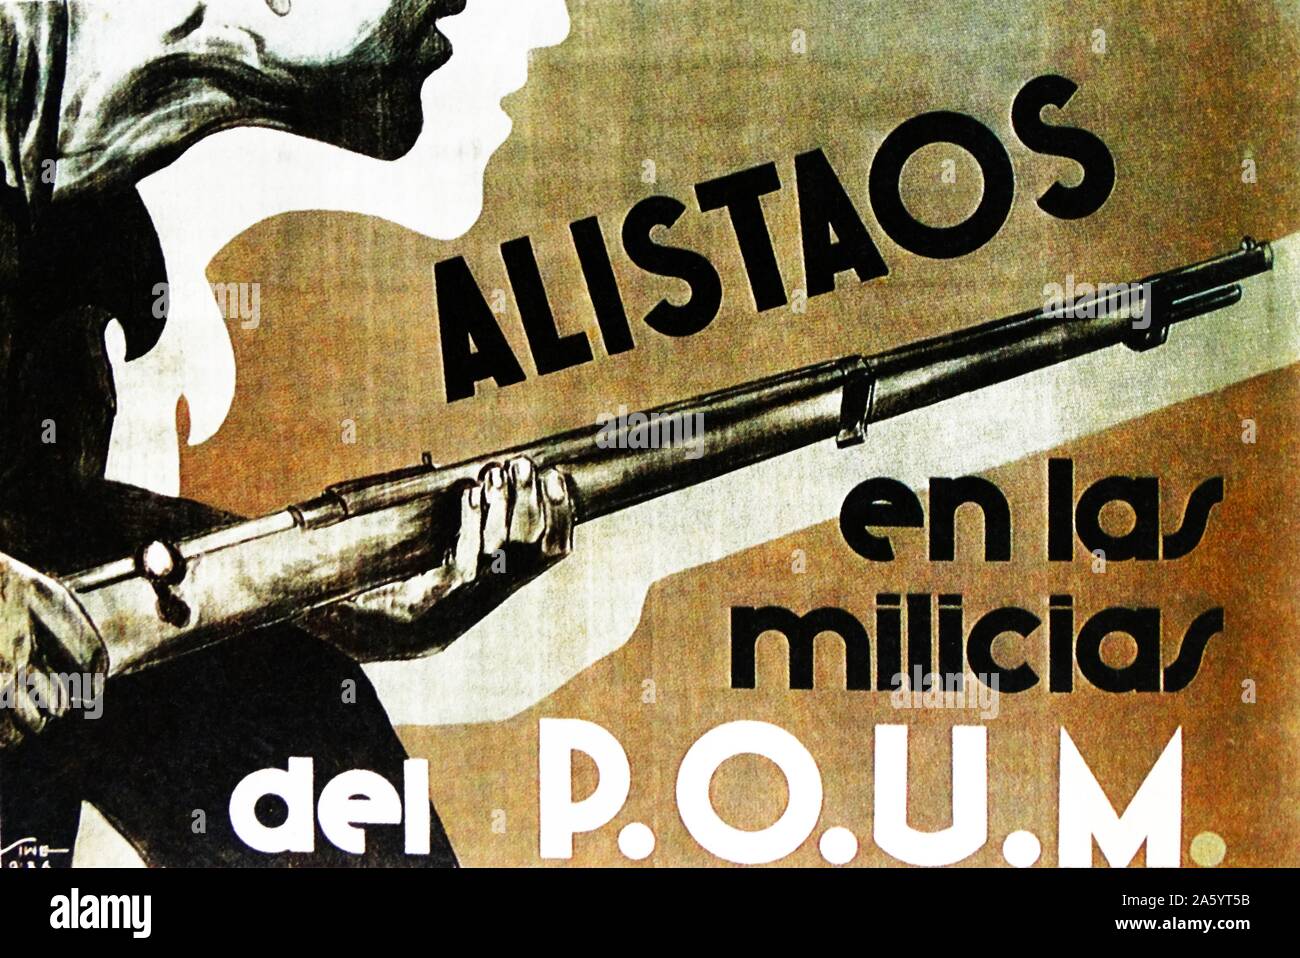 Alistaos en las Milicias del POUM (machen Sie sich bereit für die POUM-Milizen) Rekrutierung Plakat für die Arbeiterpartei der Marxistischen Einheit (POUM). POUM war eine spanische Kommunistische Partei in der Zweiten Republik gebildet und vor allem um den Spanischen Bürgerkrieg. Stockfoto